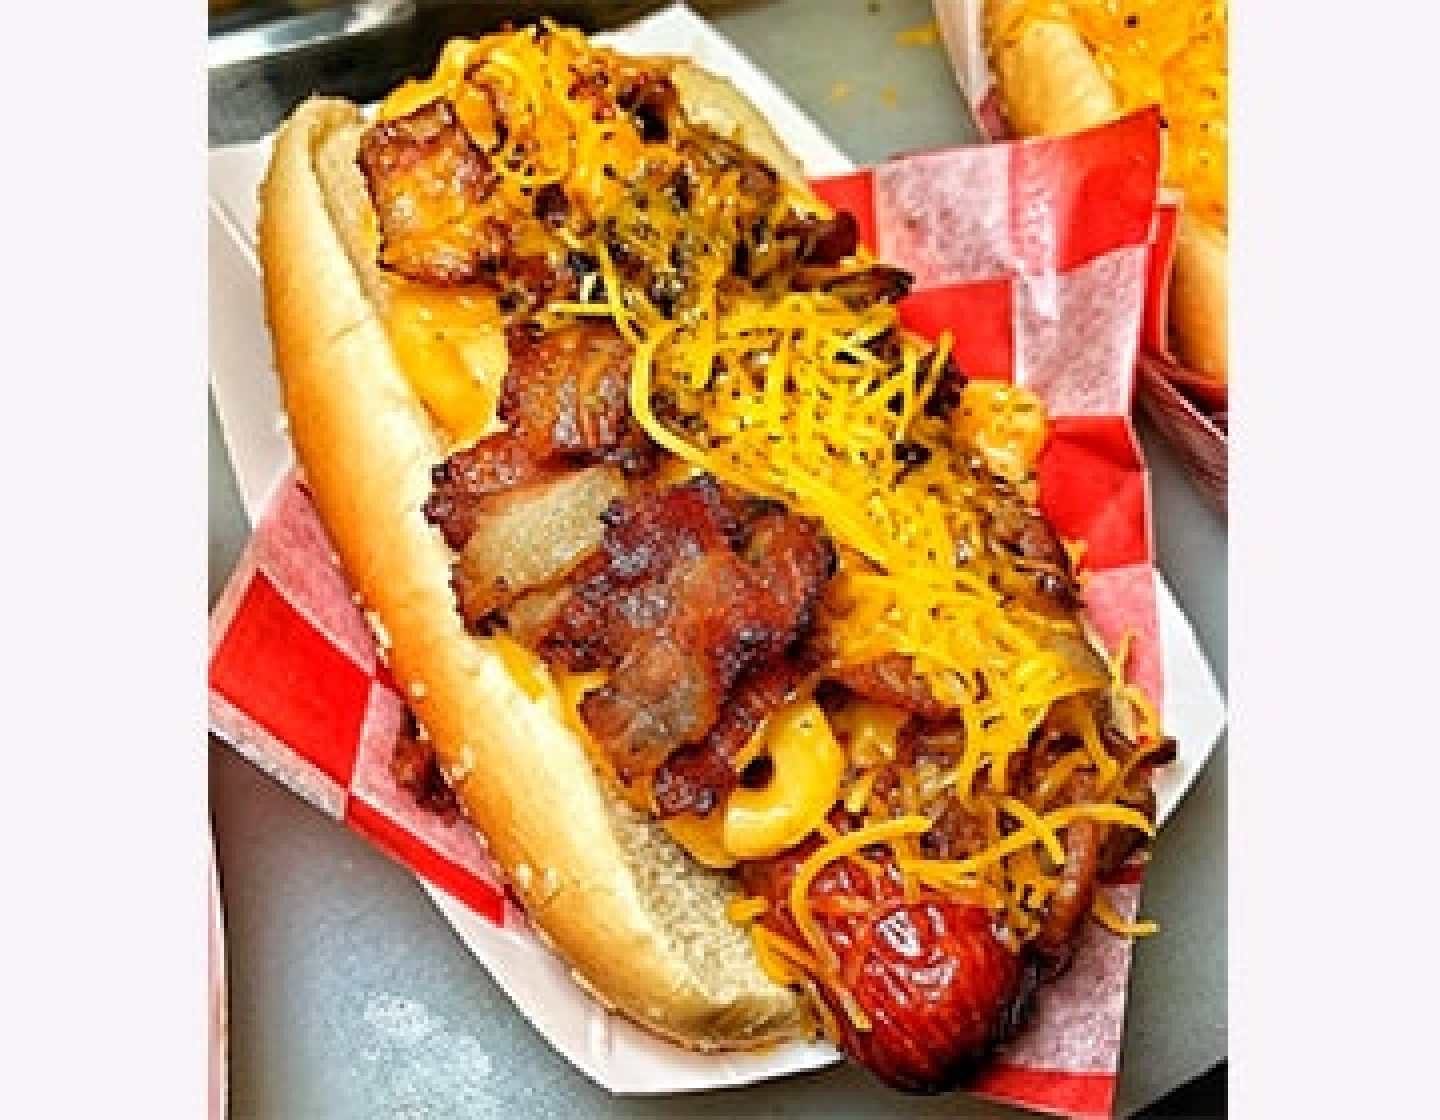 Llego la hora de descubrir los mejores Hotdogs de Colombia